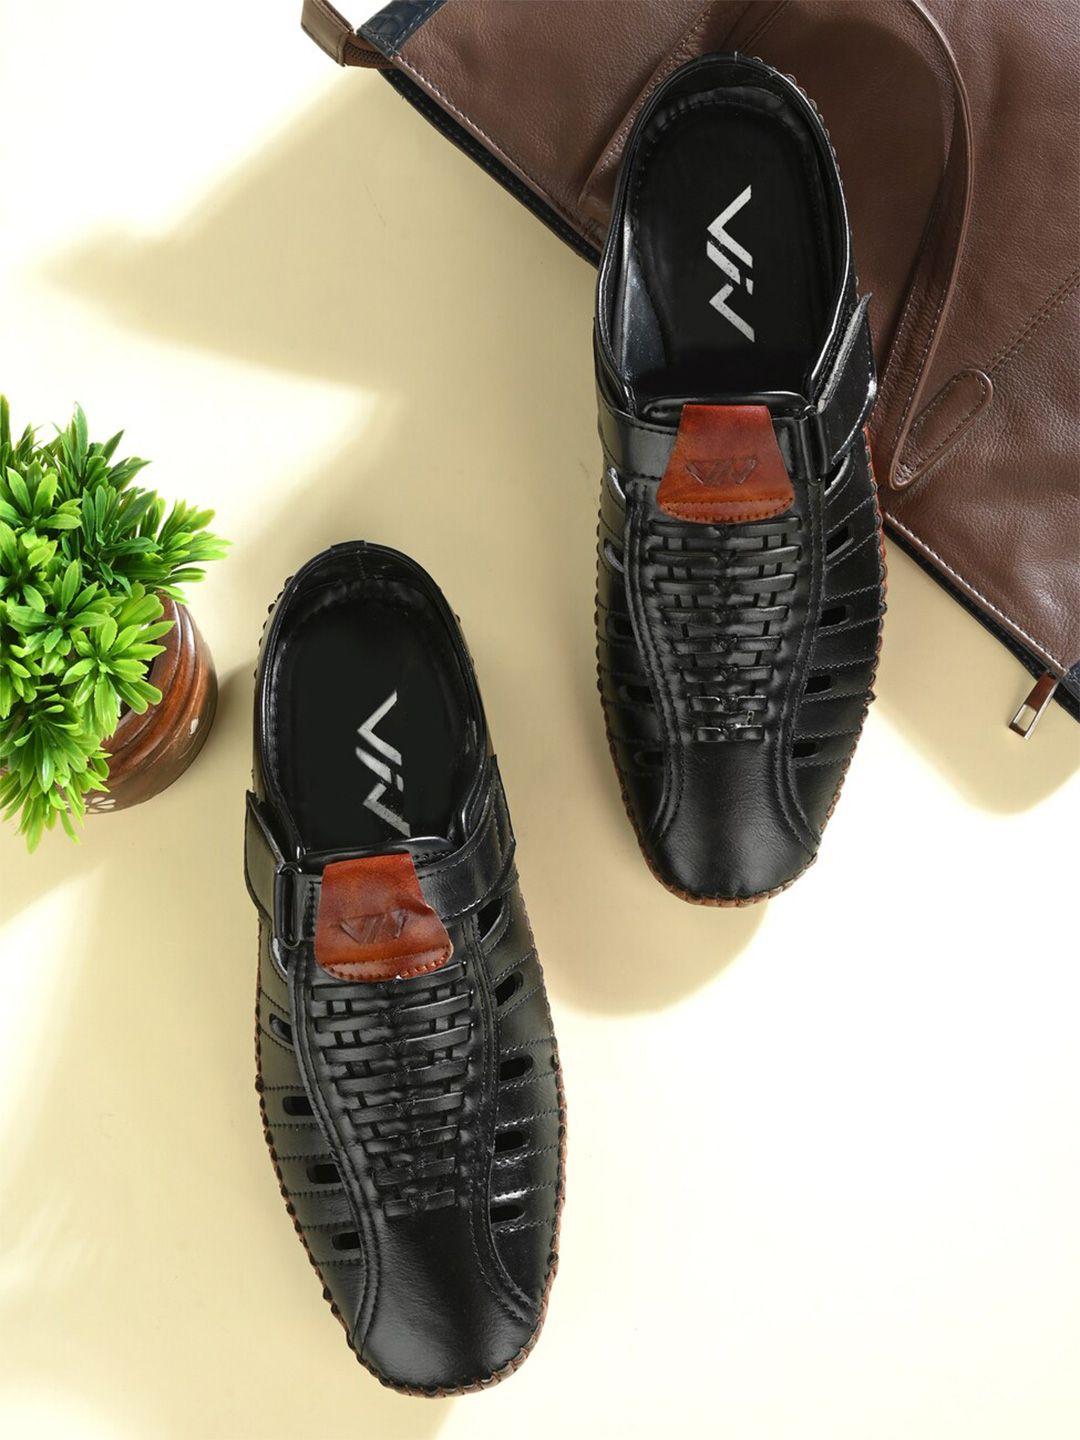 viv men colourblocked shoe-style sandals